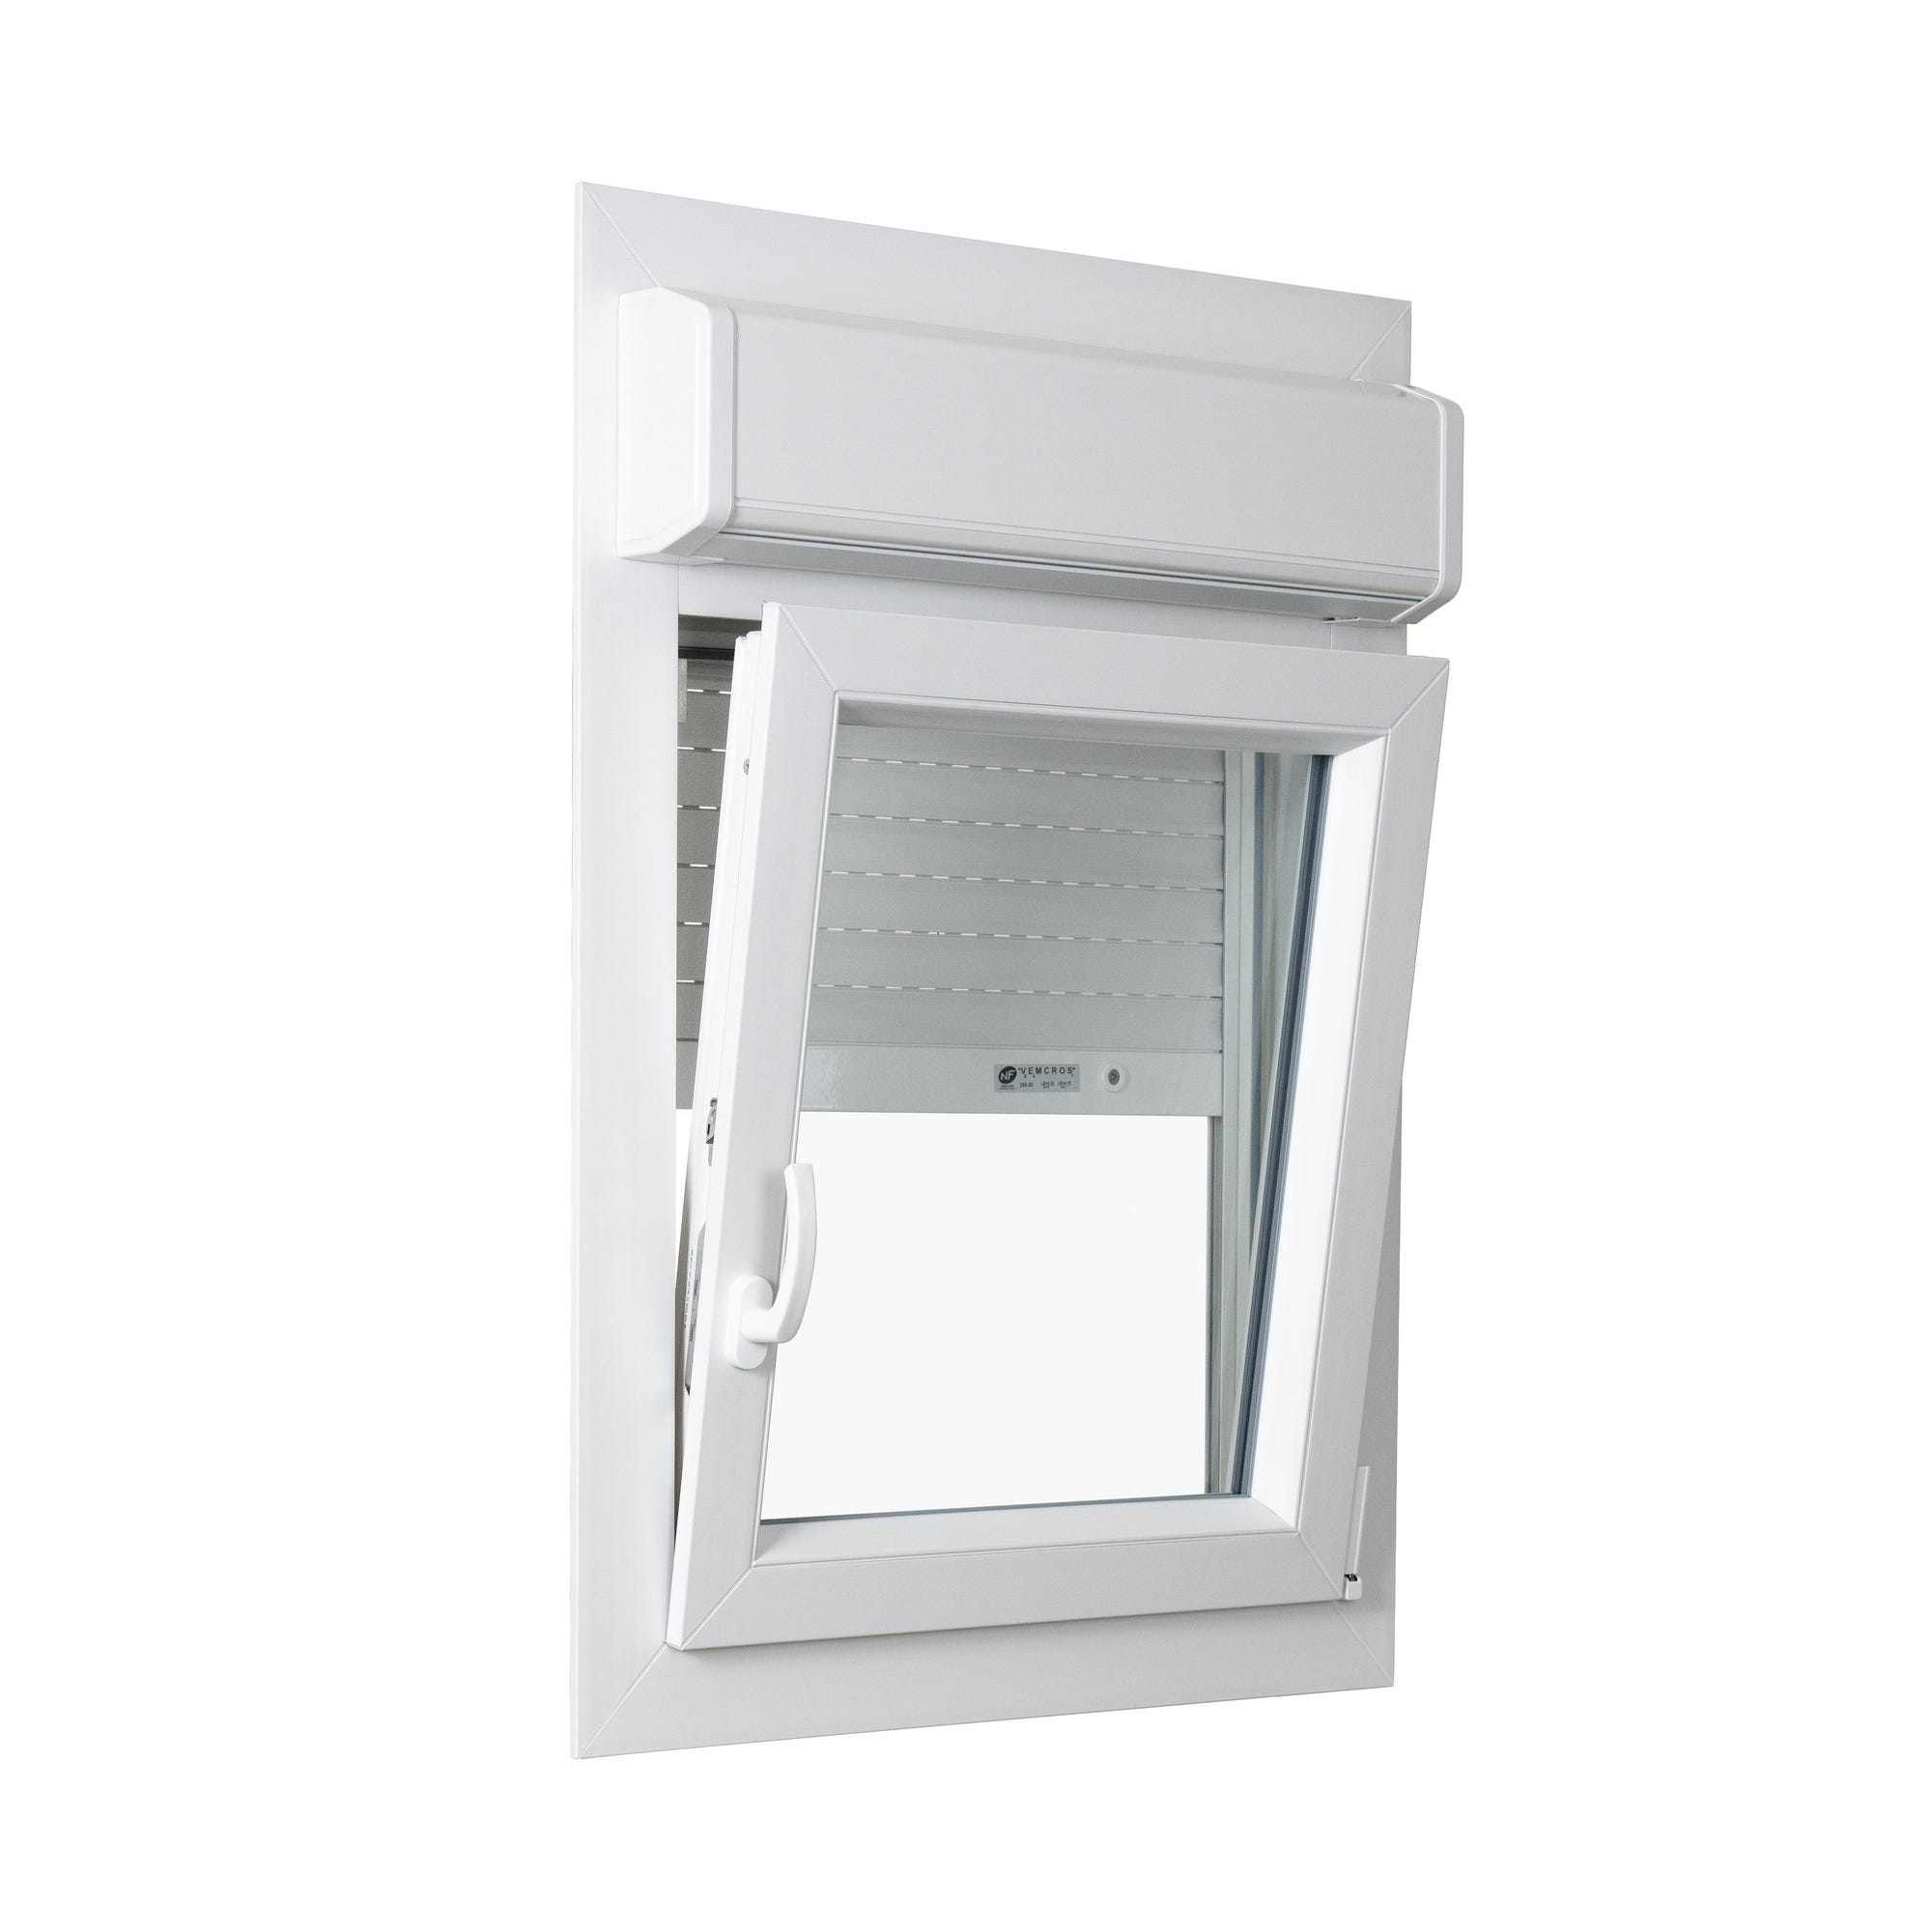 Fenêtre PVC avec volet roulant intégré monobloc Ob D 1 vantail H.75 x L.60 cm - GROSFILLEX 1